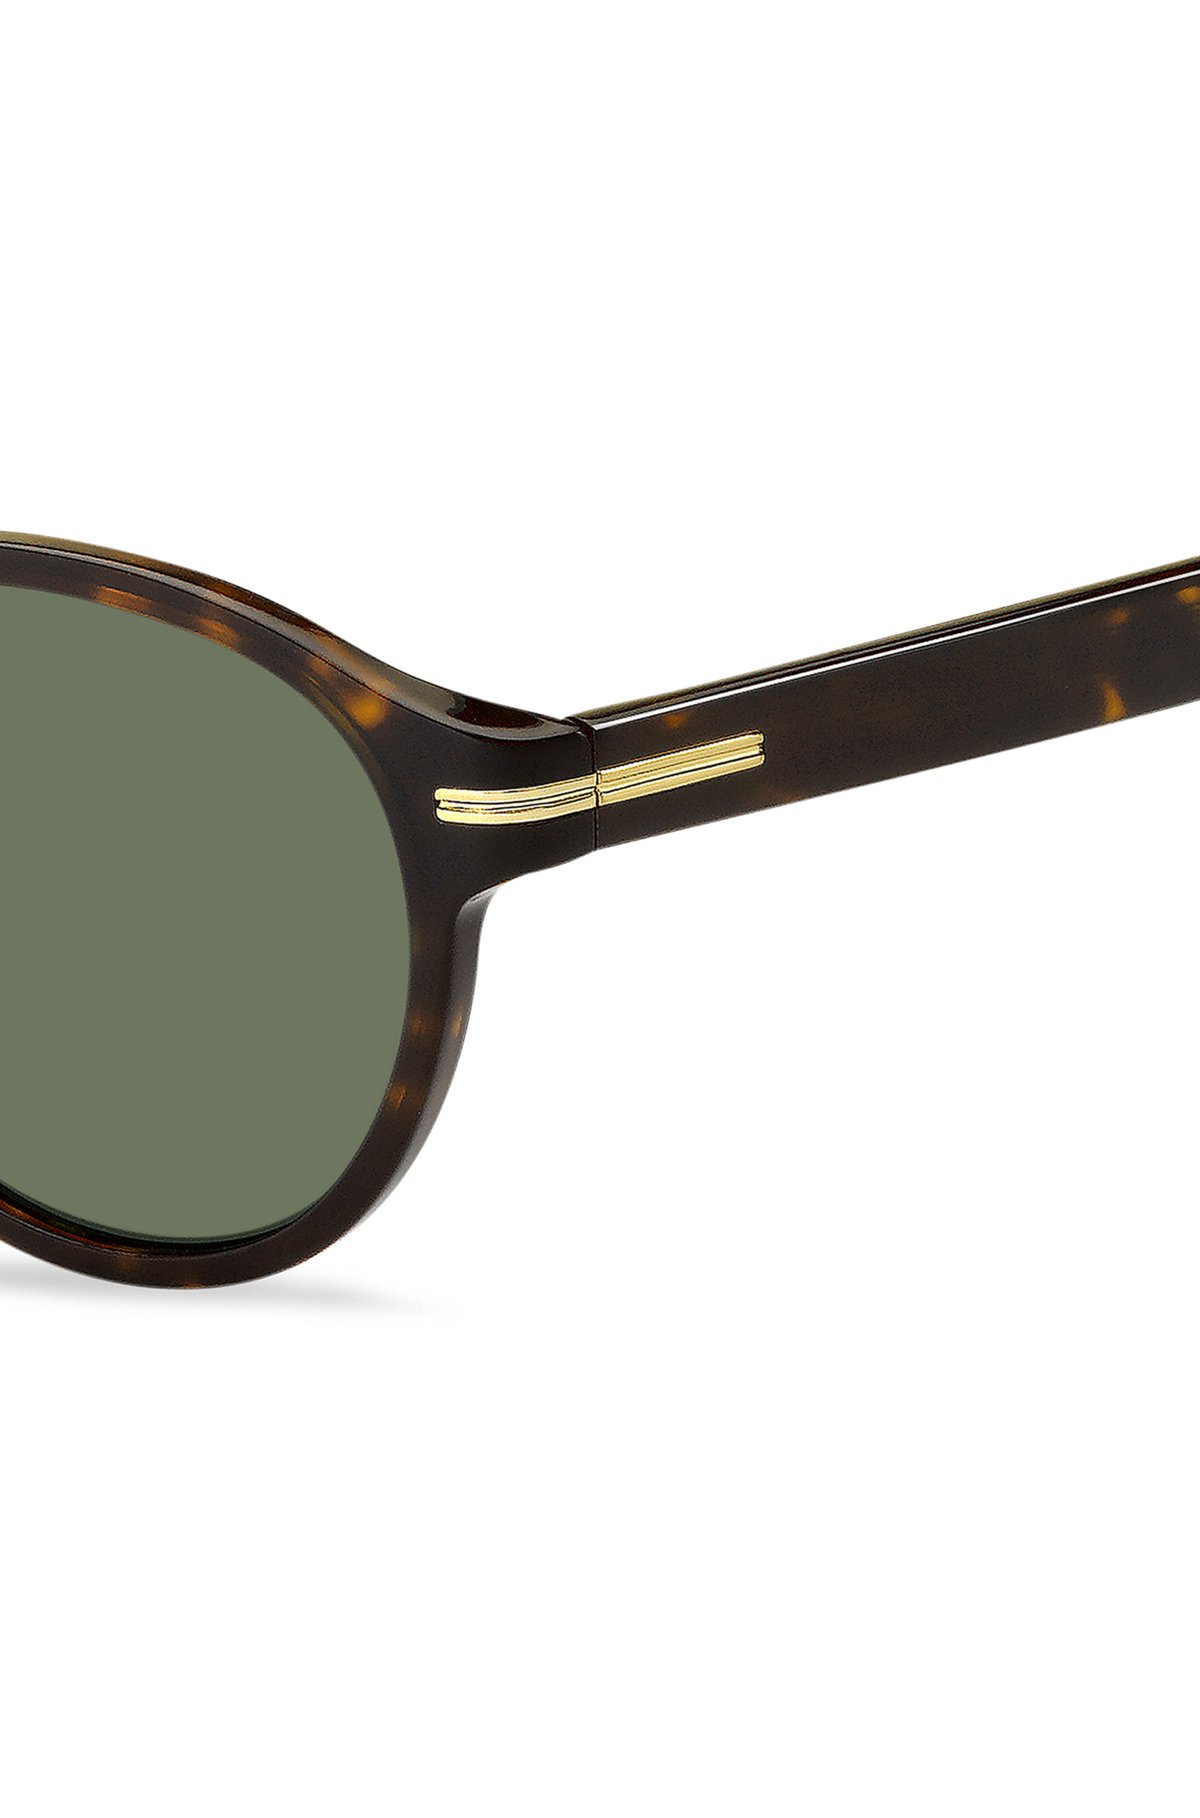 Sonnenbrille aus Acetat in Horn-Optik mit charakteristischen goldfarbenen Details, Assorted-Pre-Pack